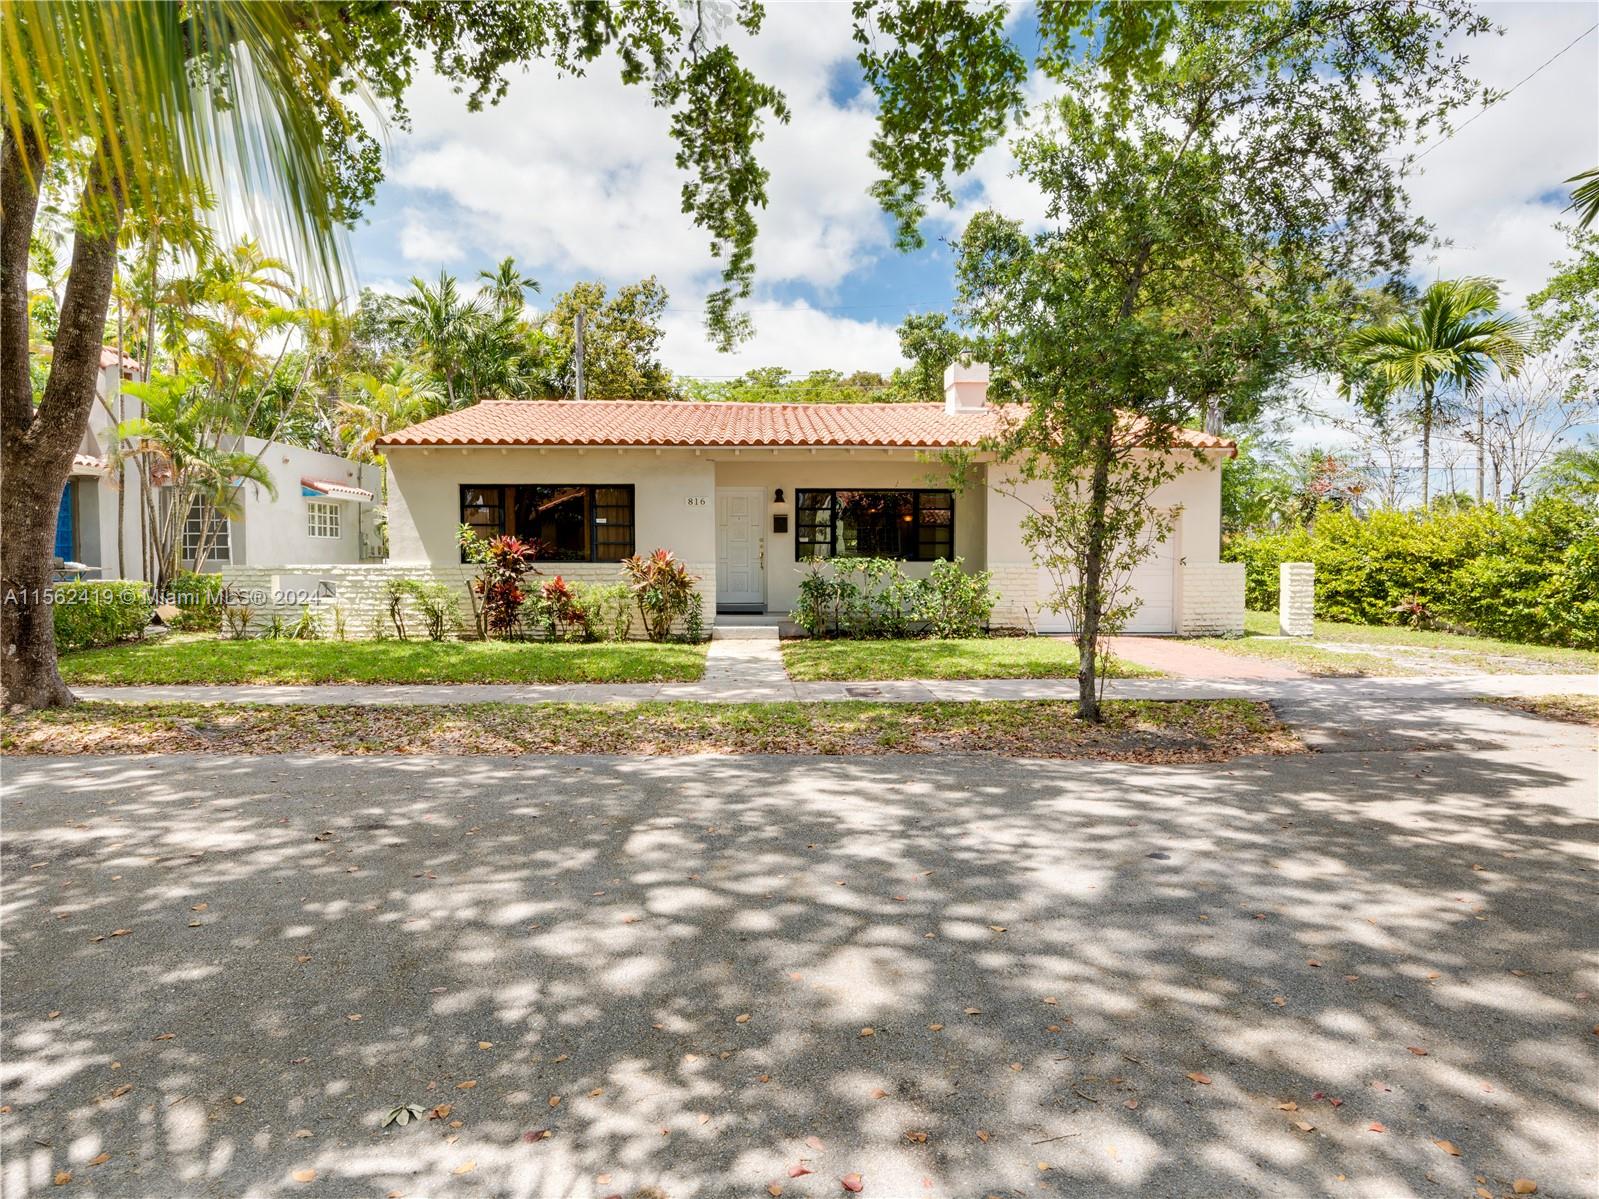 Rental Property at 816 Lorca St, Coral Gables, Broward County, Florida - Bedrooms: 2 
Bathrooms: 2  - $3,600 MO.